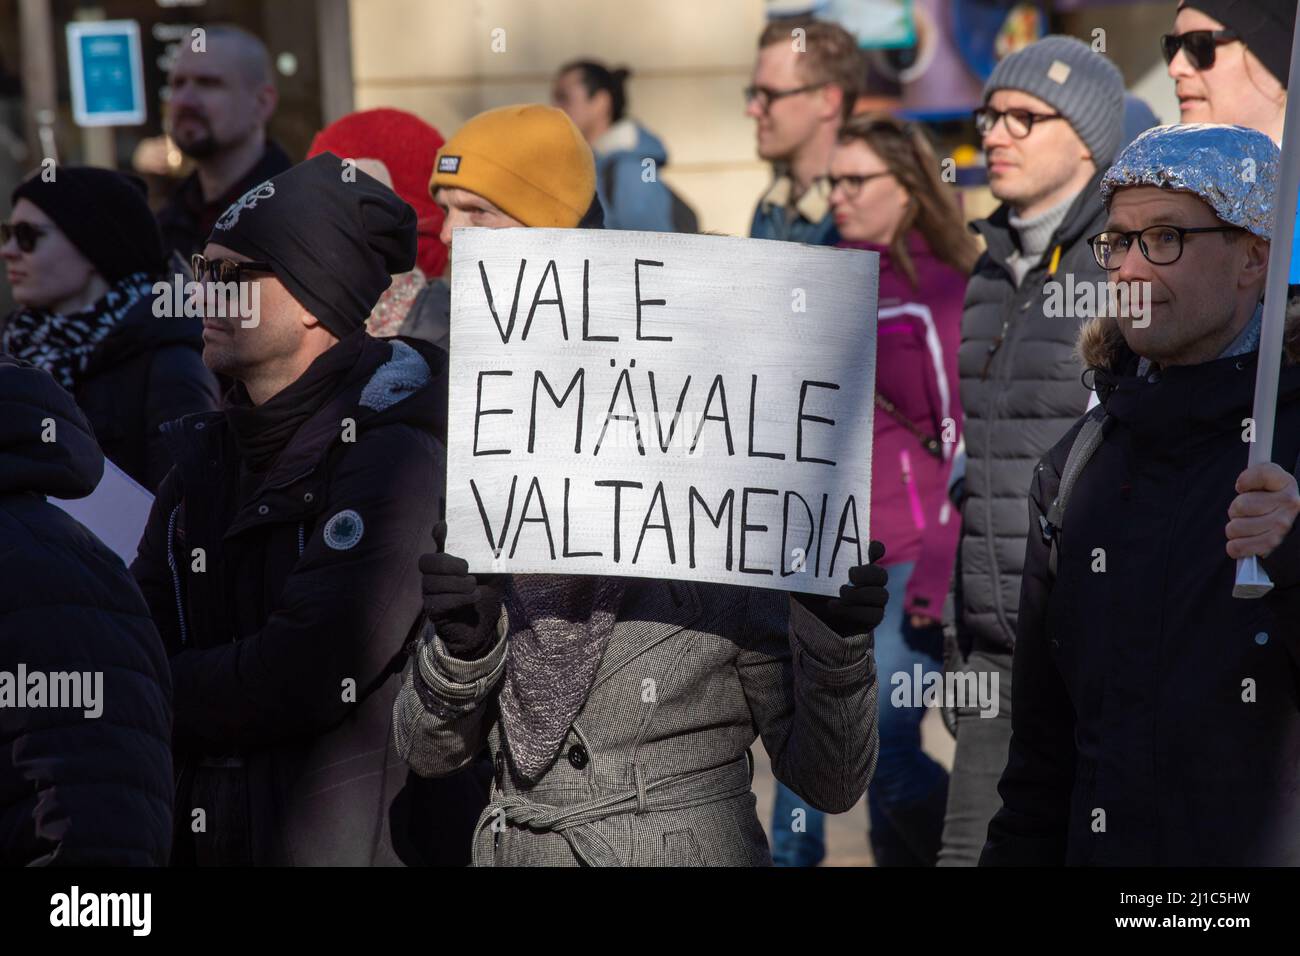 Vale emavale valtamedia. Protesta con un cartello alla dimostrazione Worlwide 7,0 a Helsinki, Finlandia. Foto Stock